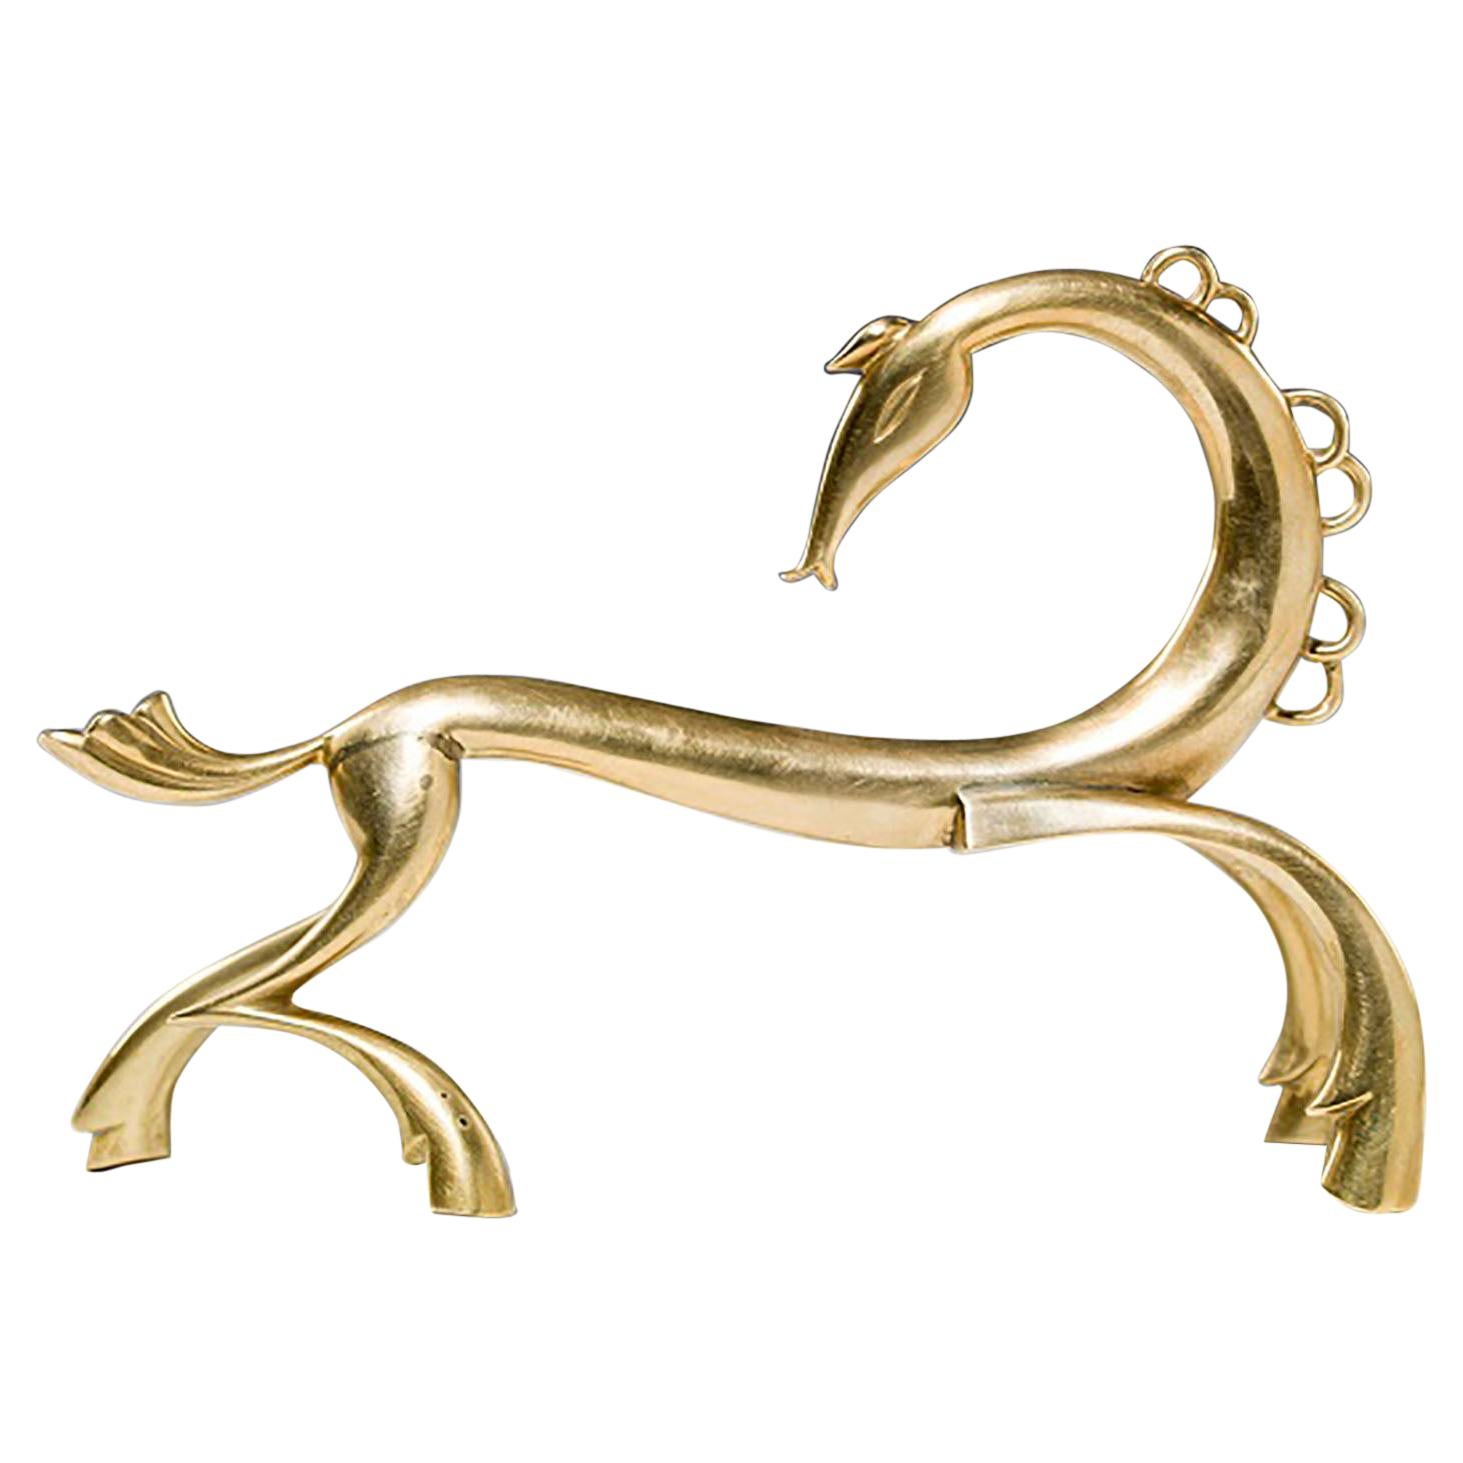 Austrian Art Deco Brass Horse Sculpture by Werkstätte Hagenauer, Vienna